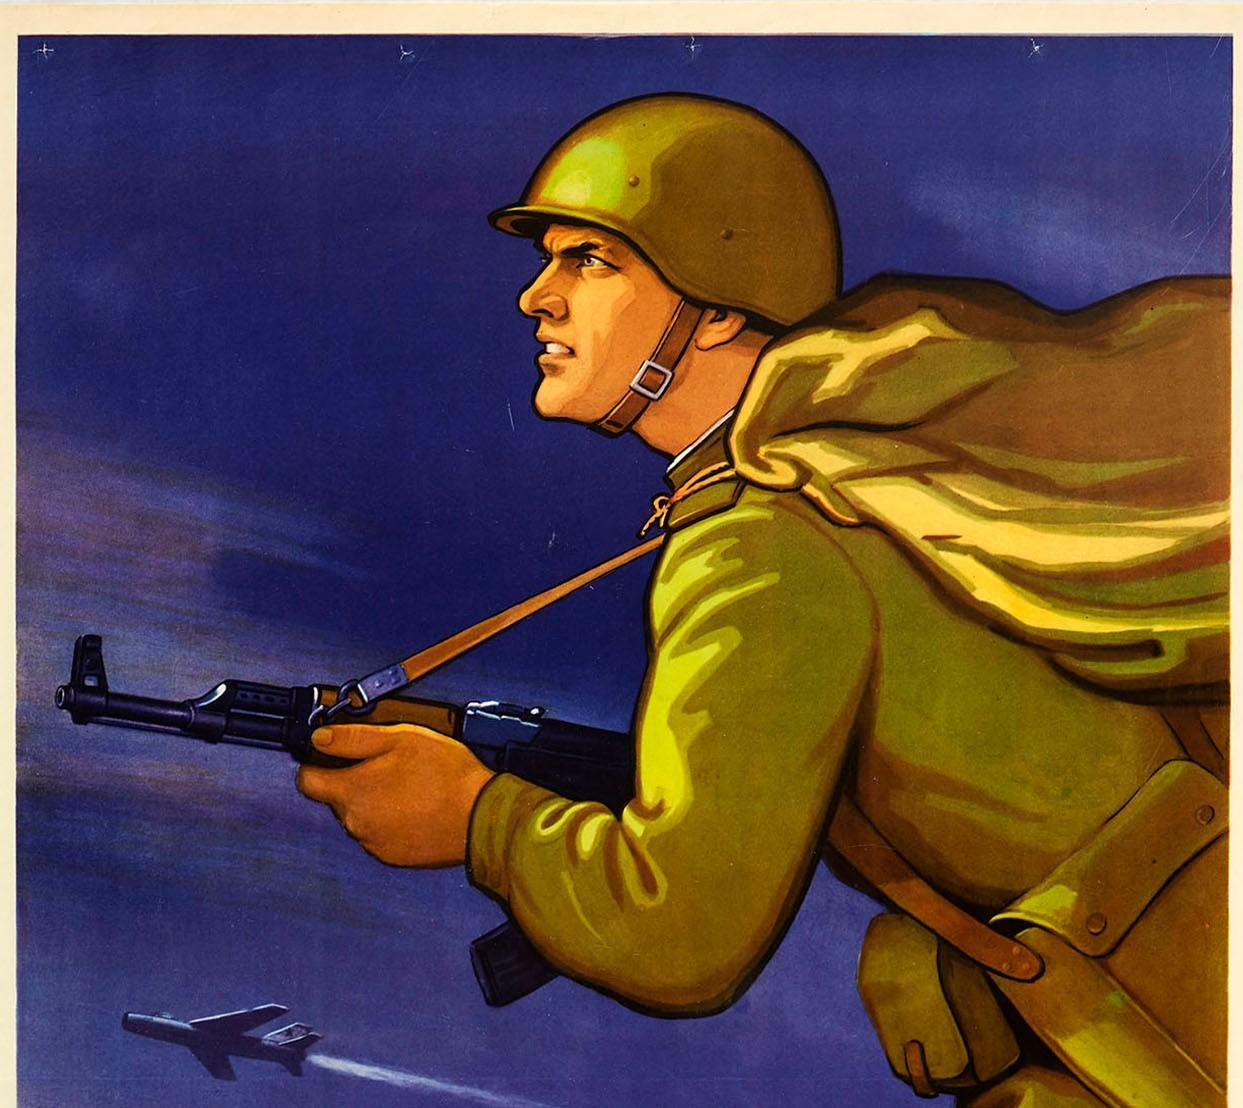 Affiche vintage originale de propagande soviétique pendant la guerre froide, apprendre à progresser...! - Print de A. Kruchina